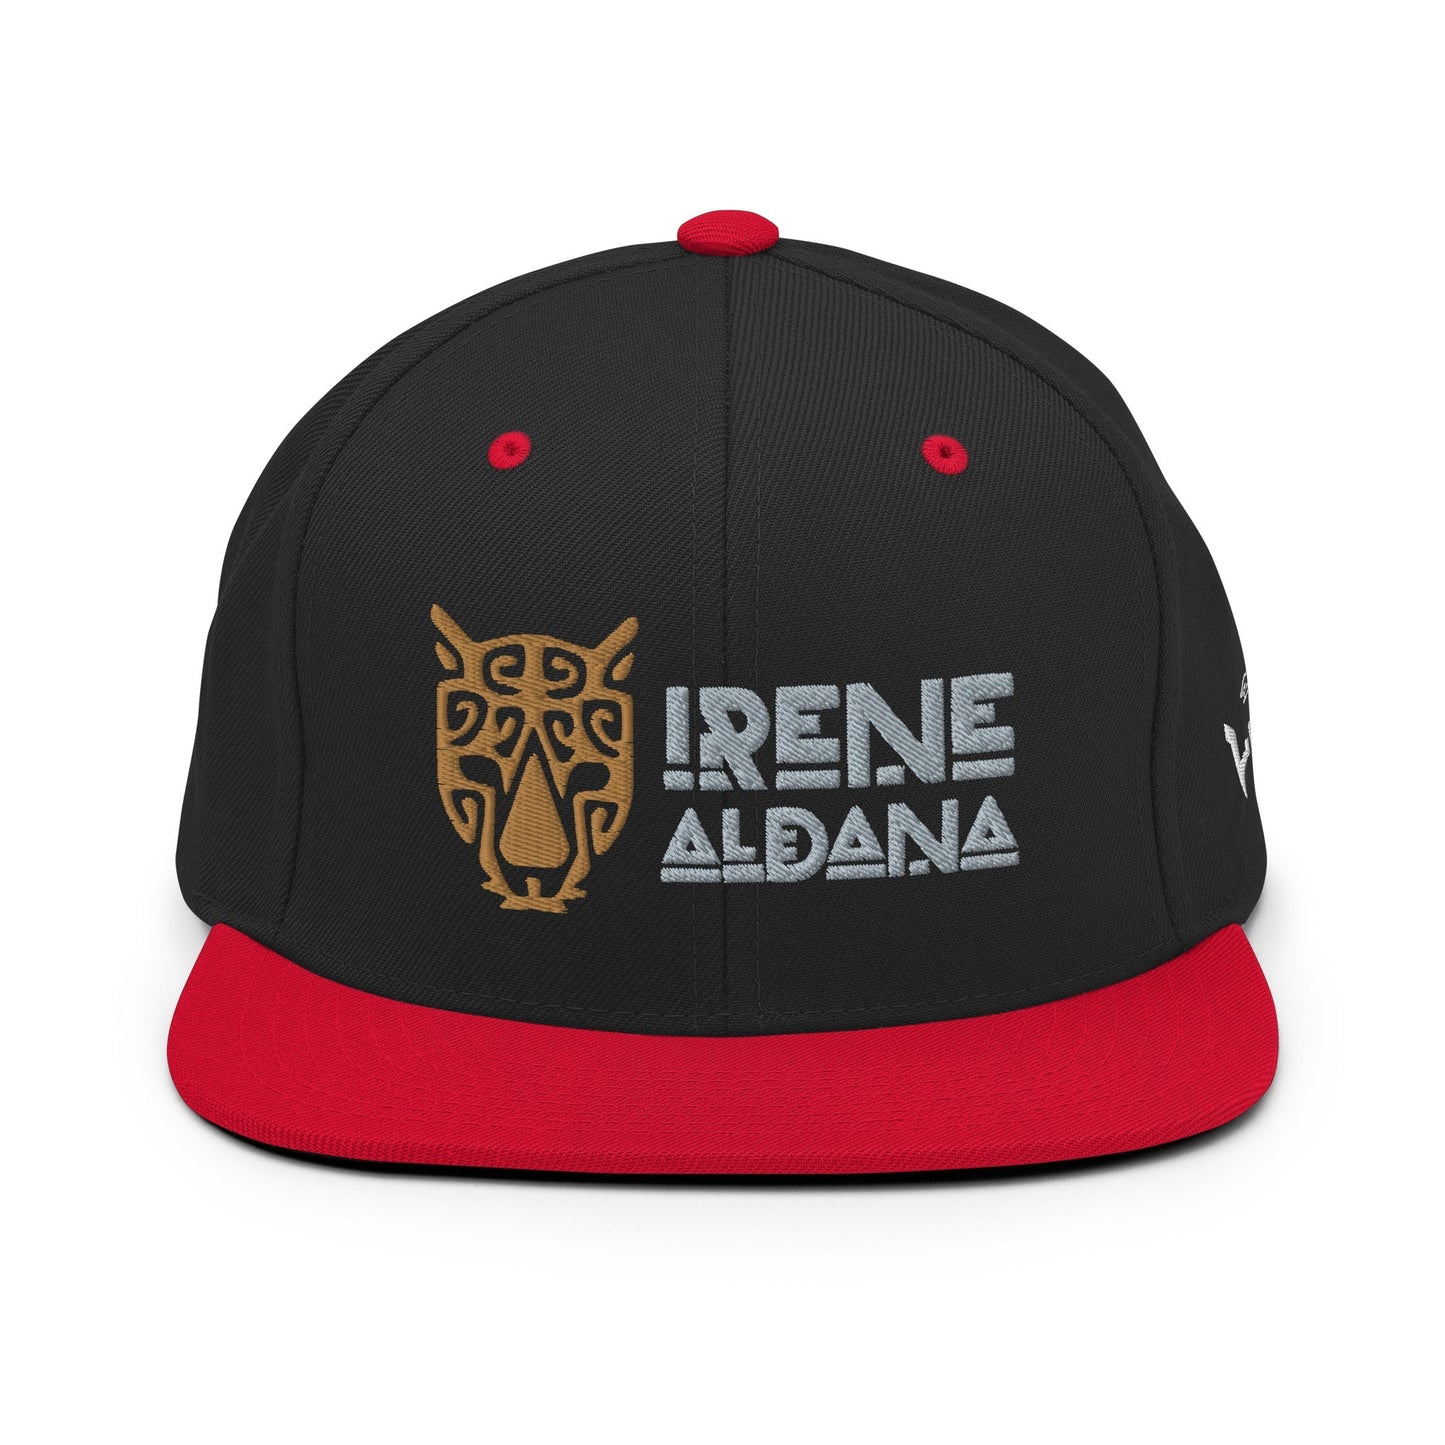 Irene Aldana Snapback Hat 02 Qonan Fightwear